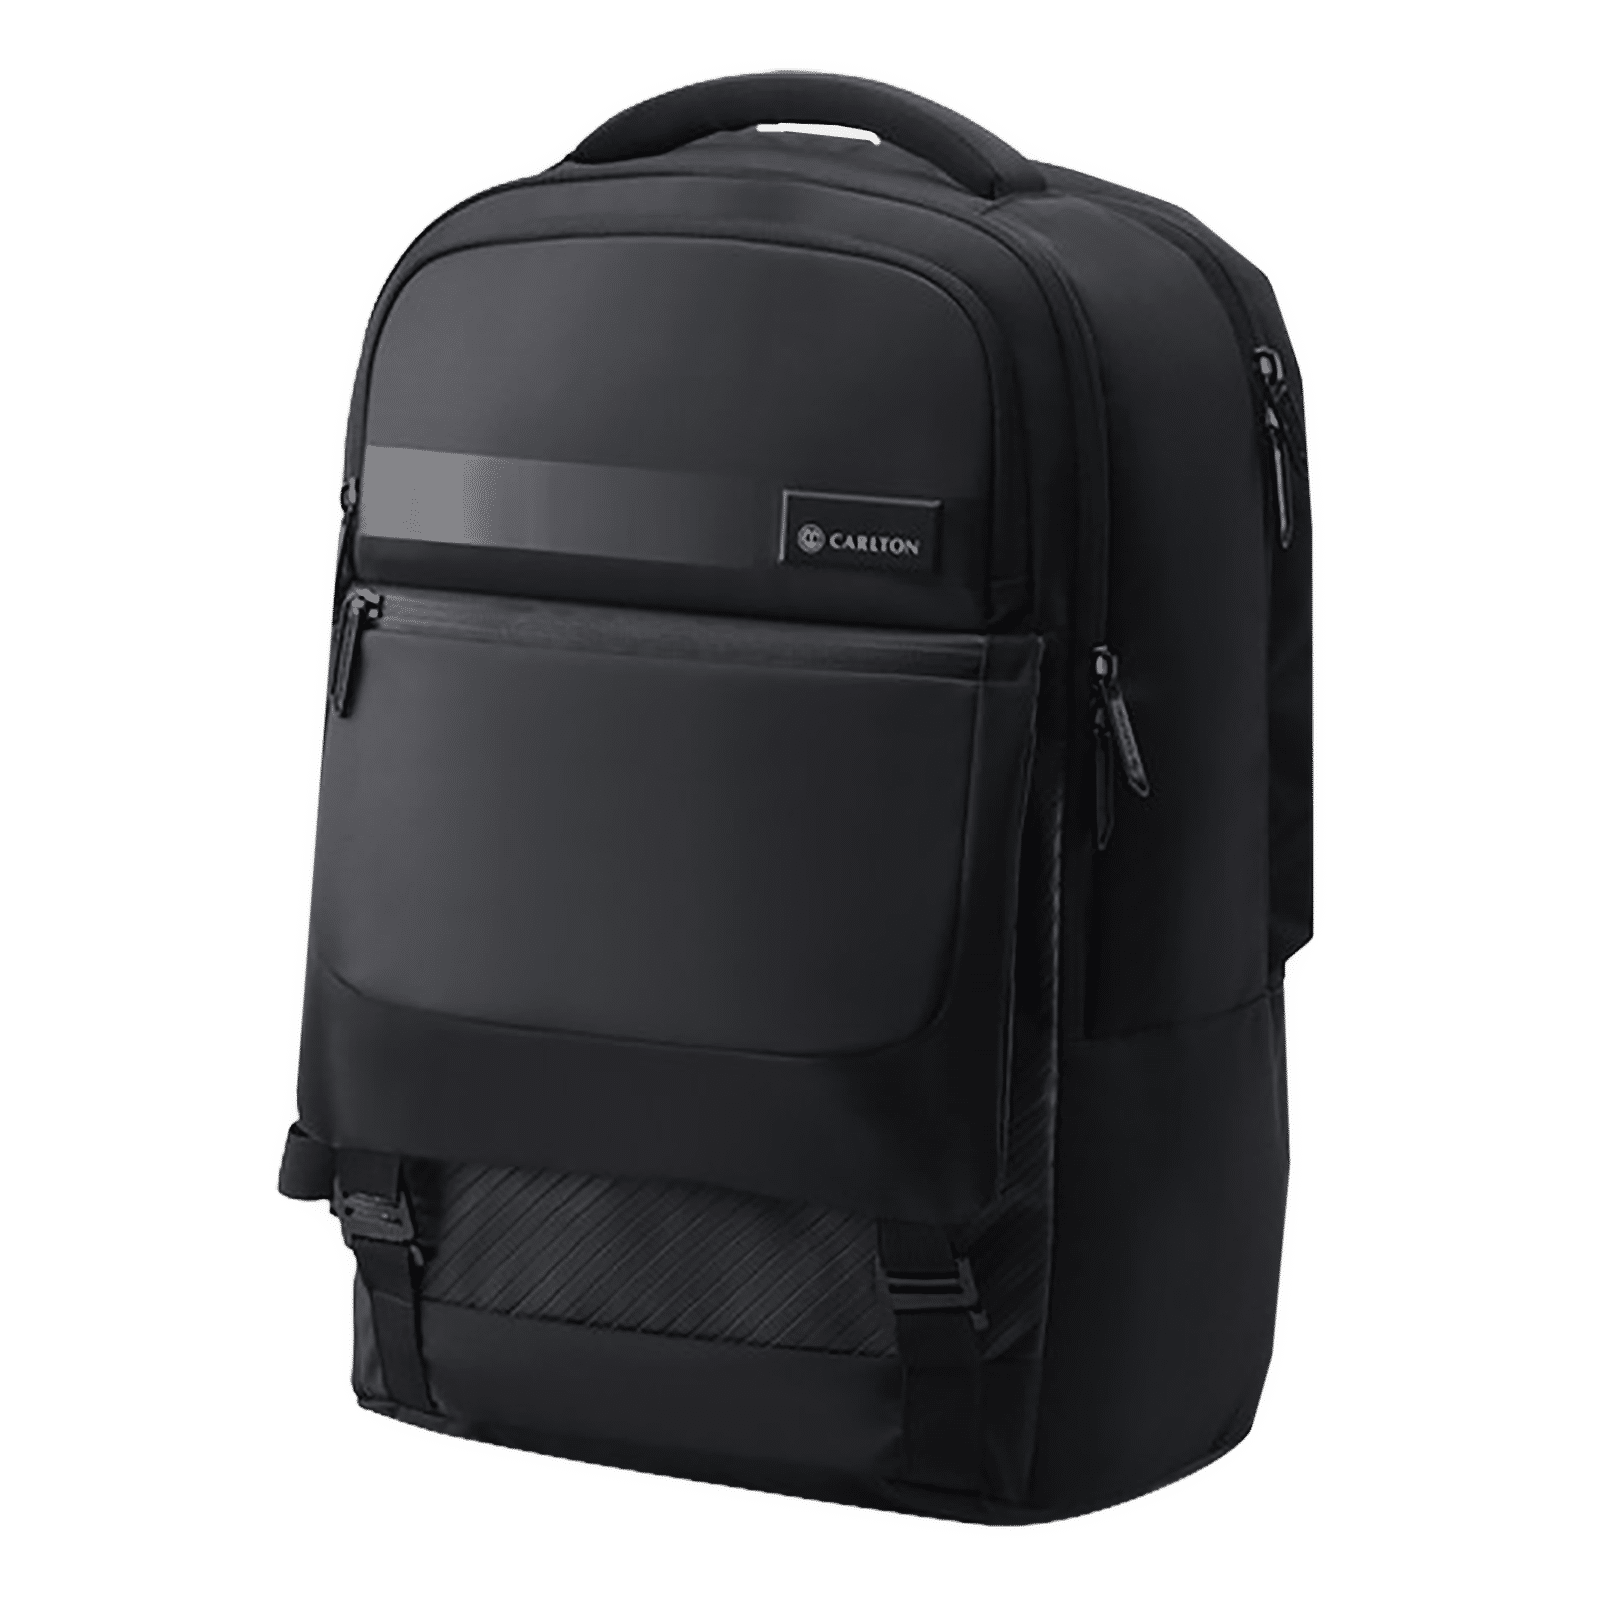 Buy Carlton Dorset 03 Nylon Laptop Backpack for 17 Inch Laptop (27 L ...